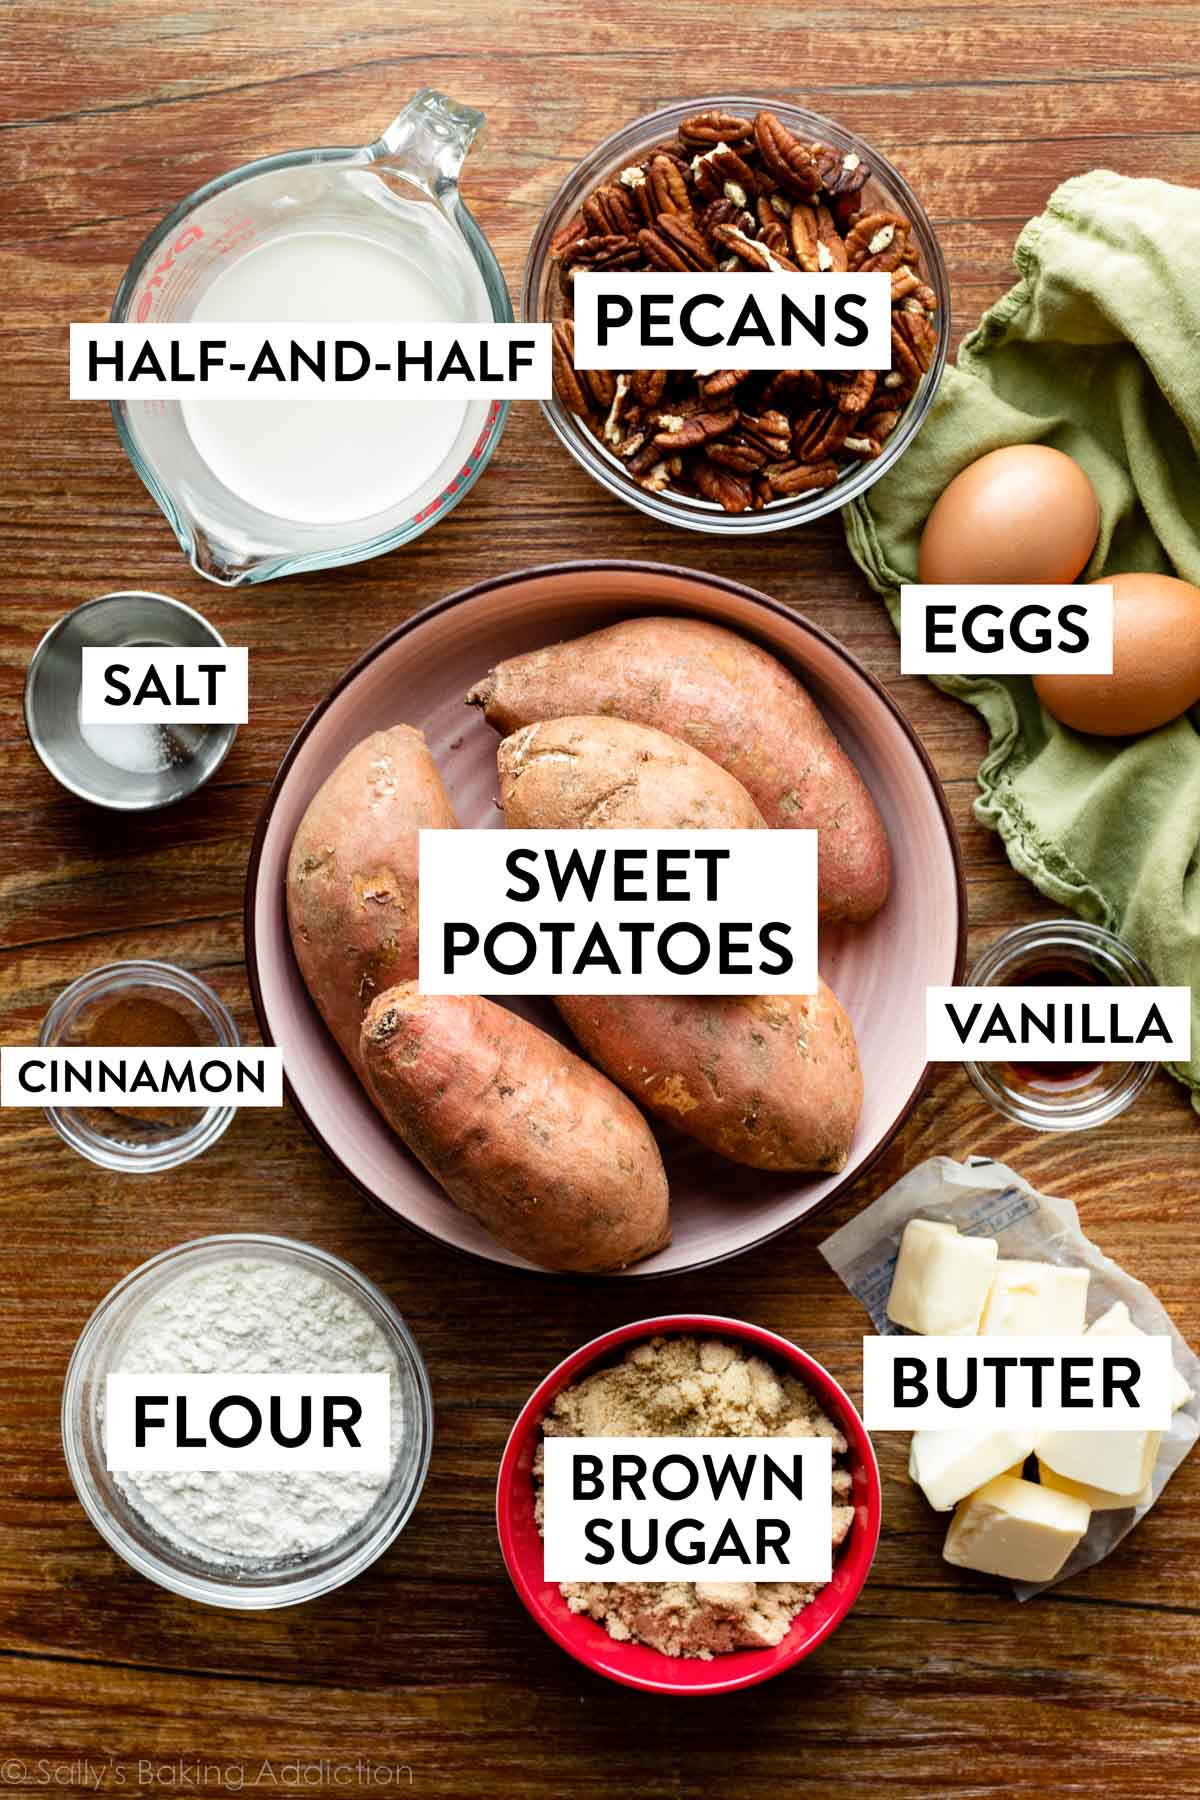 ingredientes sobre fondo de madera que incluyen nueces, batatas, huevos, mantequilla, azúcar moreno y más.